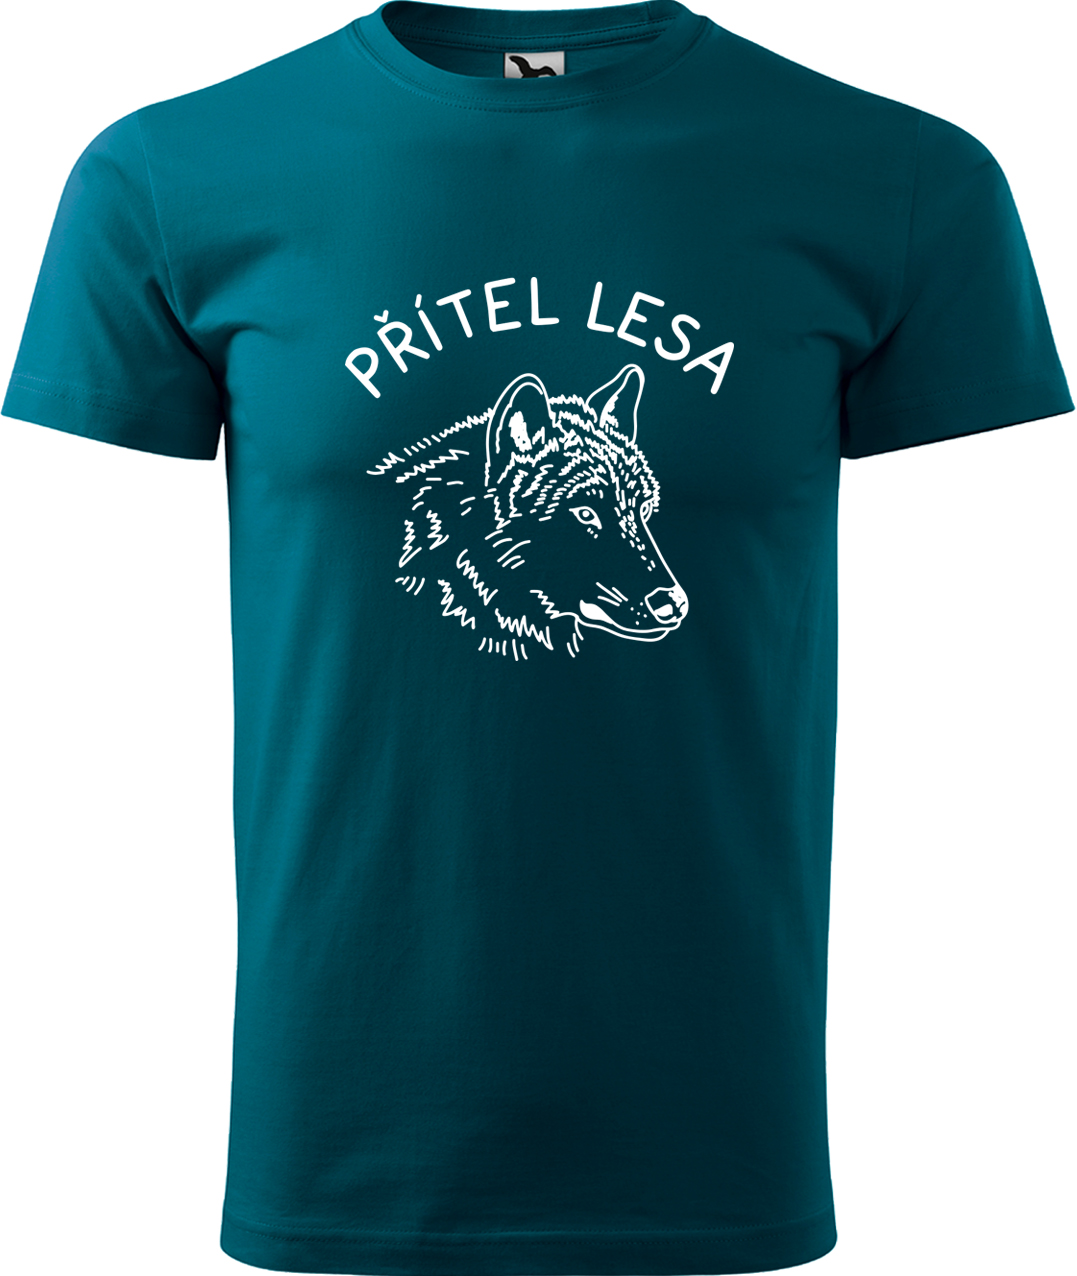 Pánské tričko s vlkem - Přítel lesa Velikost: 3XL, Barva: Petrolejová (93), Střih: pánský